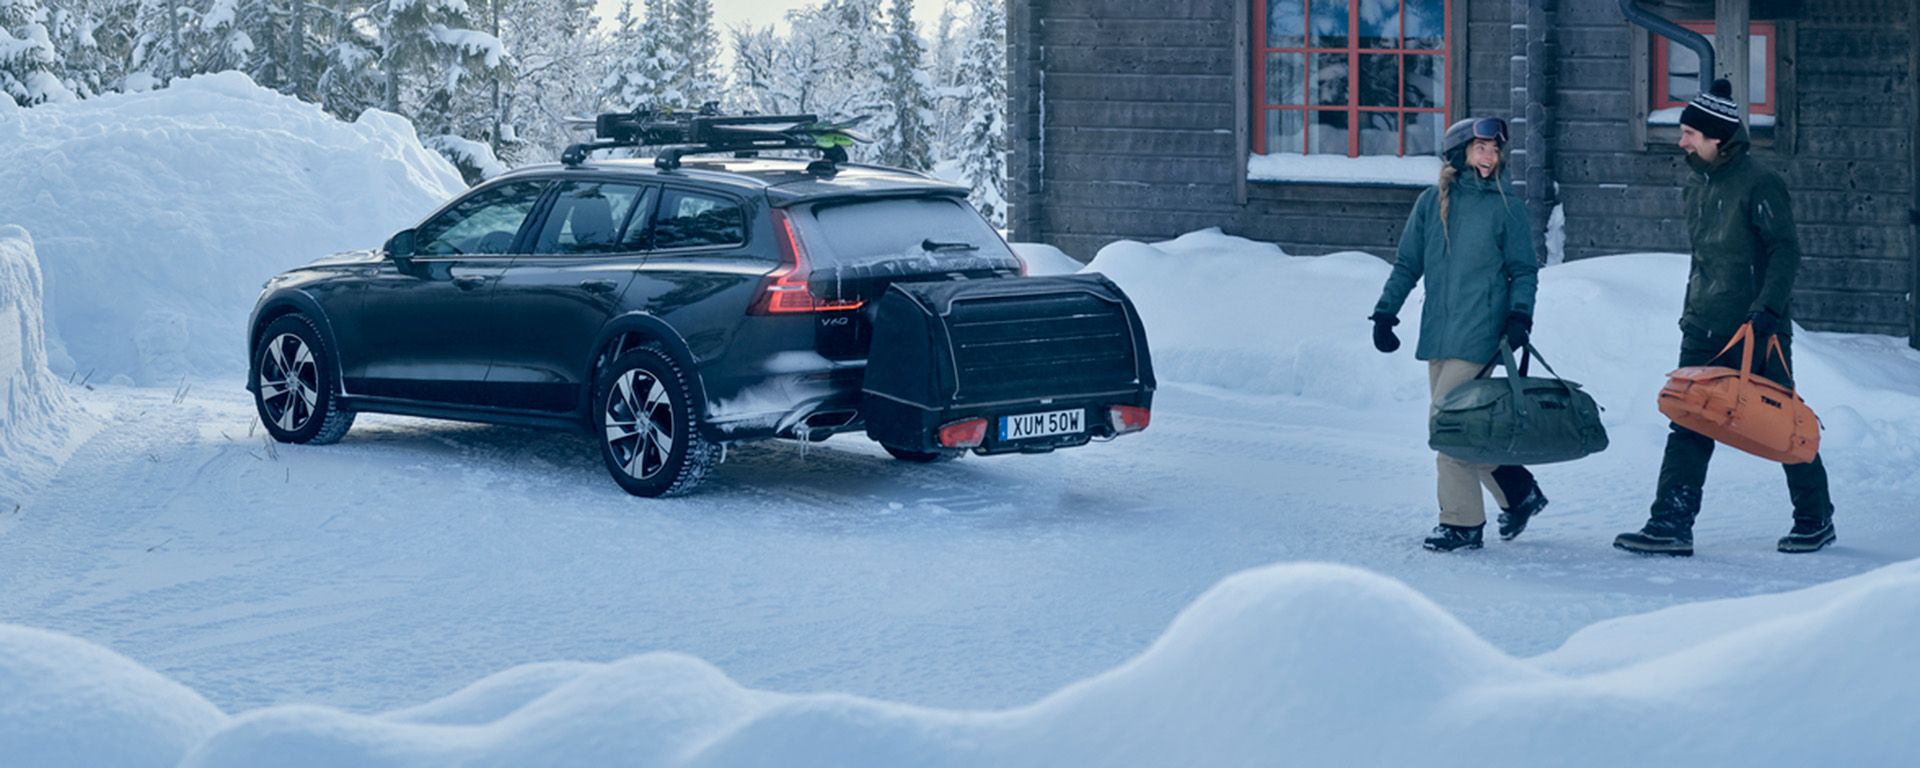 Een auto met een Thule Onto bagagebox achterop de auto en een skidrager is geparkeerd in de sneeuw naast een huisje.